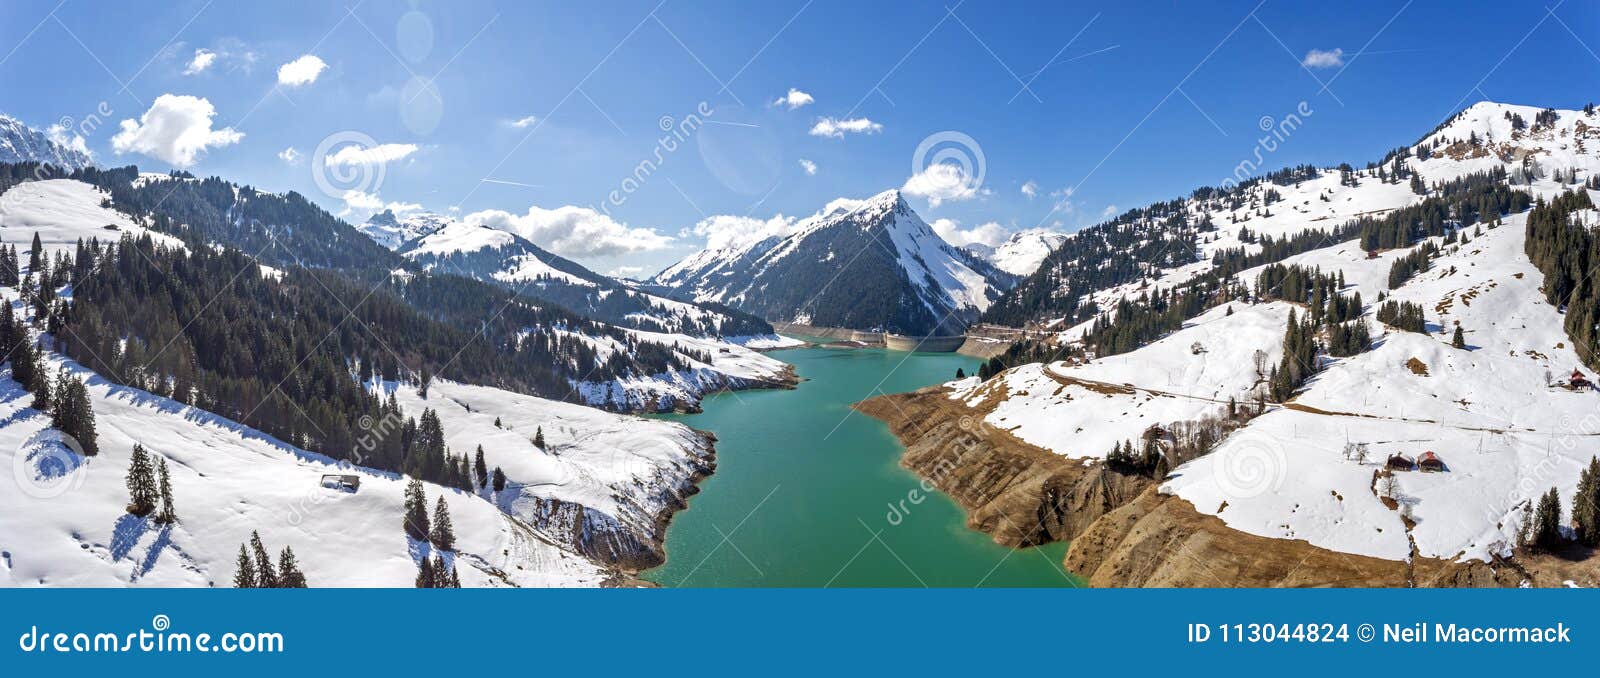 Lac De L Hongrin Jest Rezerwuarem W Vaud Szwajcaria Rezerwuar Z Nawierzchniowym Terenem 1 60 Km2 0 62 Sq Mi Lokalizuja W Zdjecie Stock Obraz Zlozonej Z Powietrze Wysokog